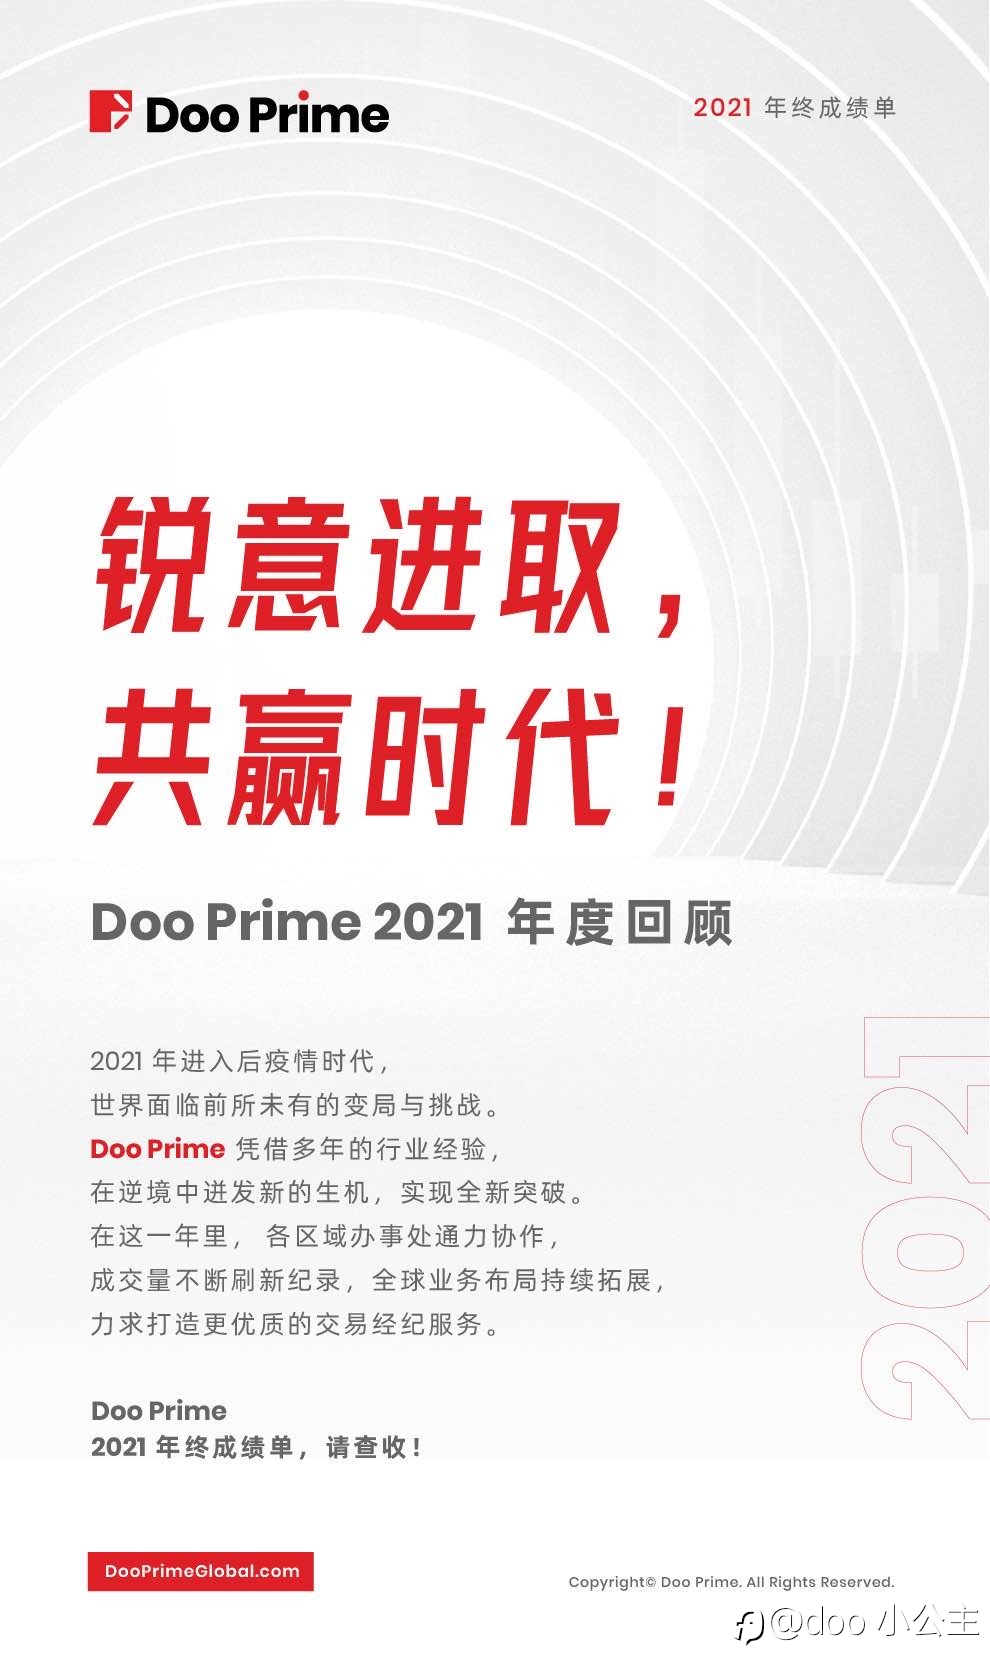 锐意进取，共赢时代！Doo Prime 2021 年度回顾